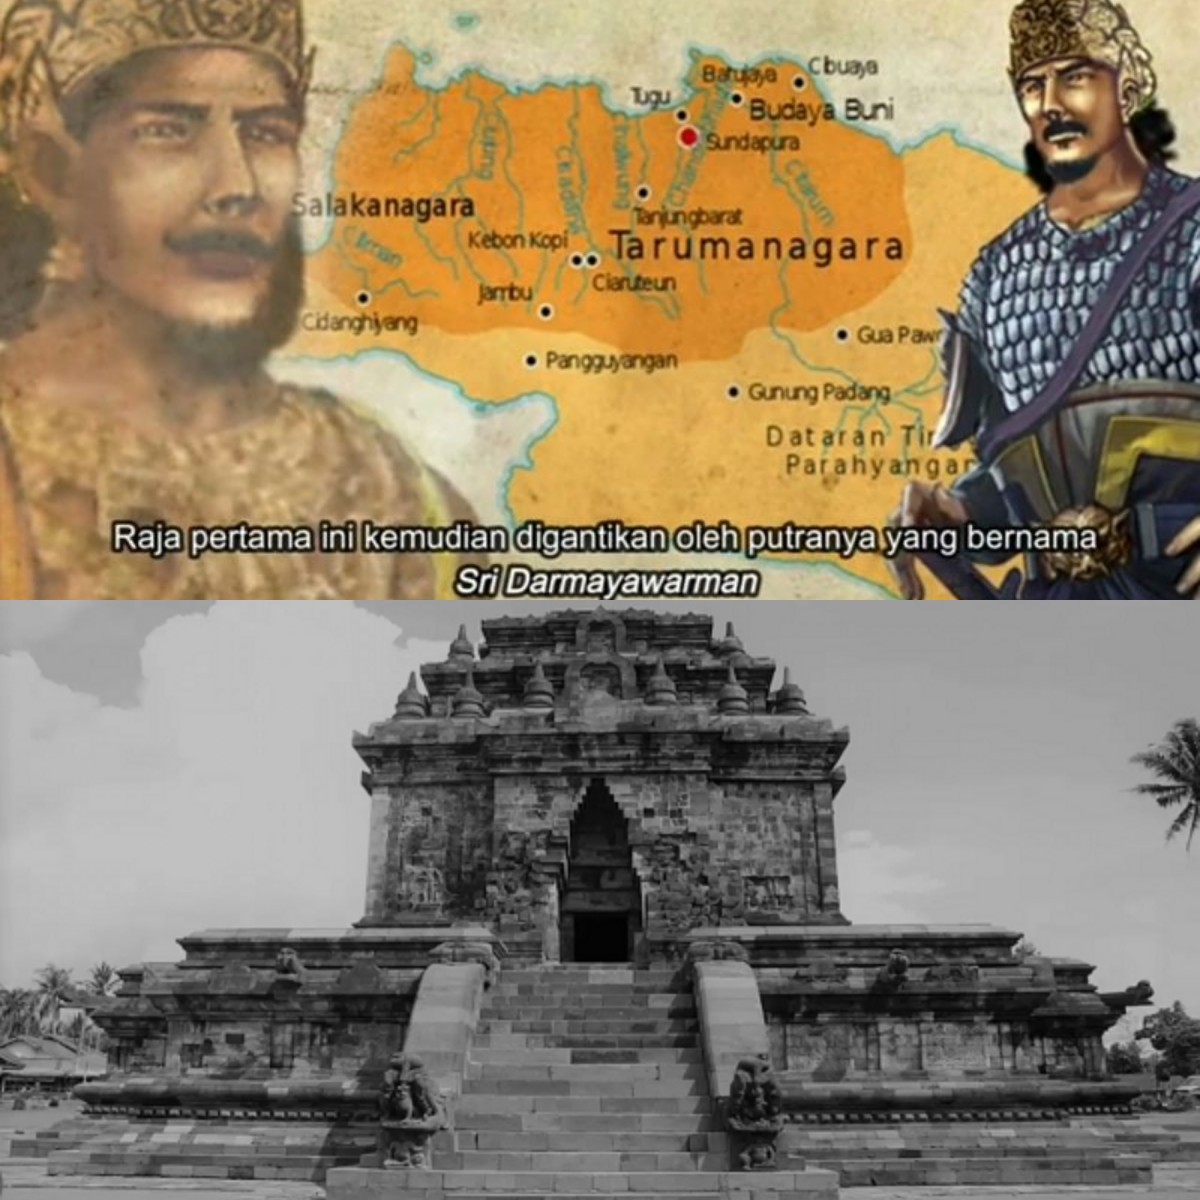 Mengungkap Sejarah Peradaban Kerajaan Tarumanegara di Jawa Barat Indonesia